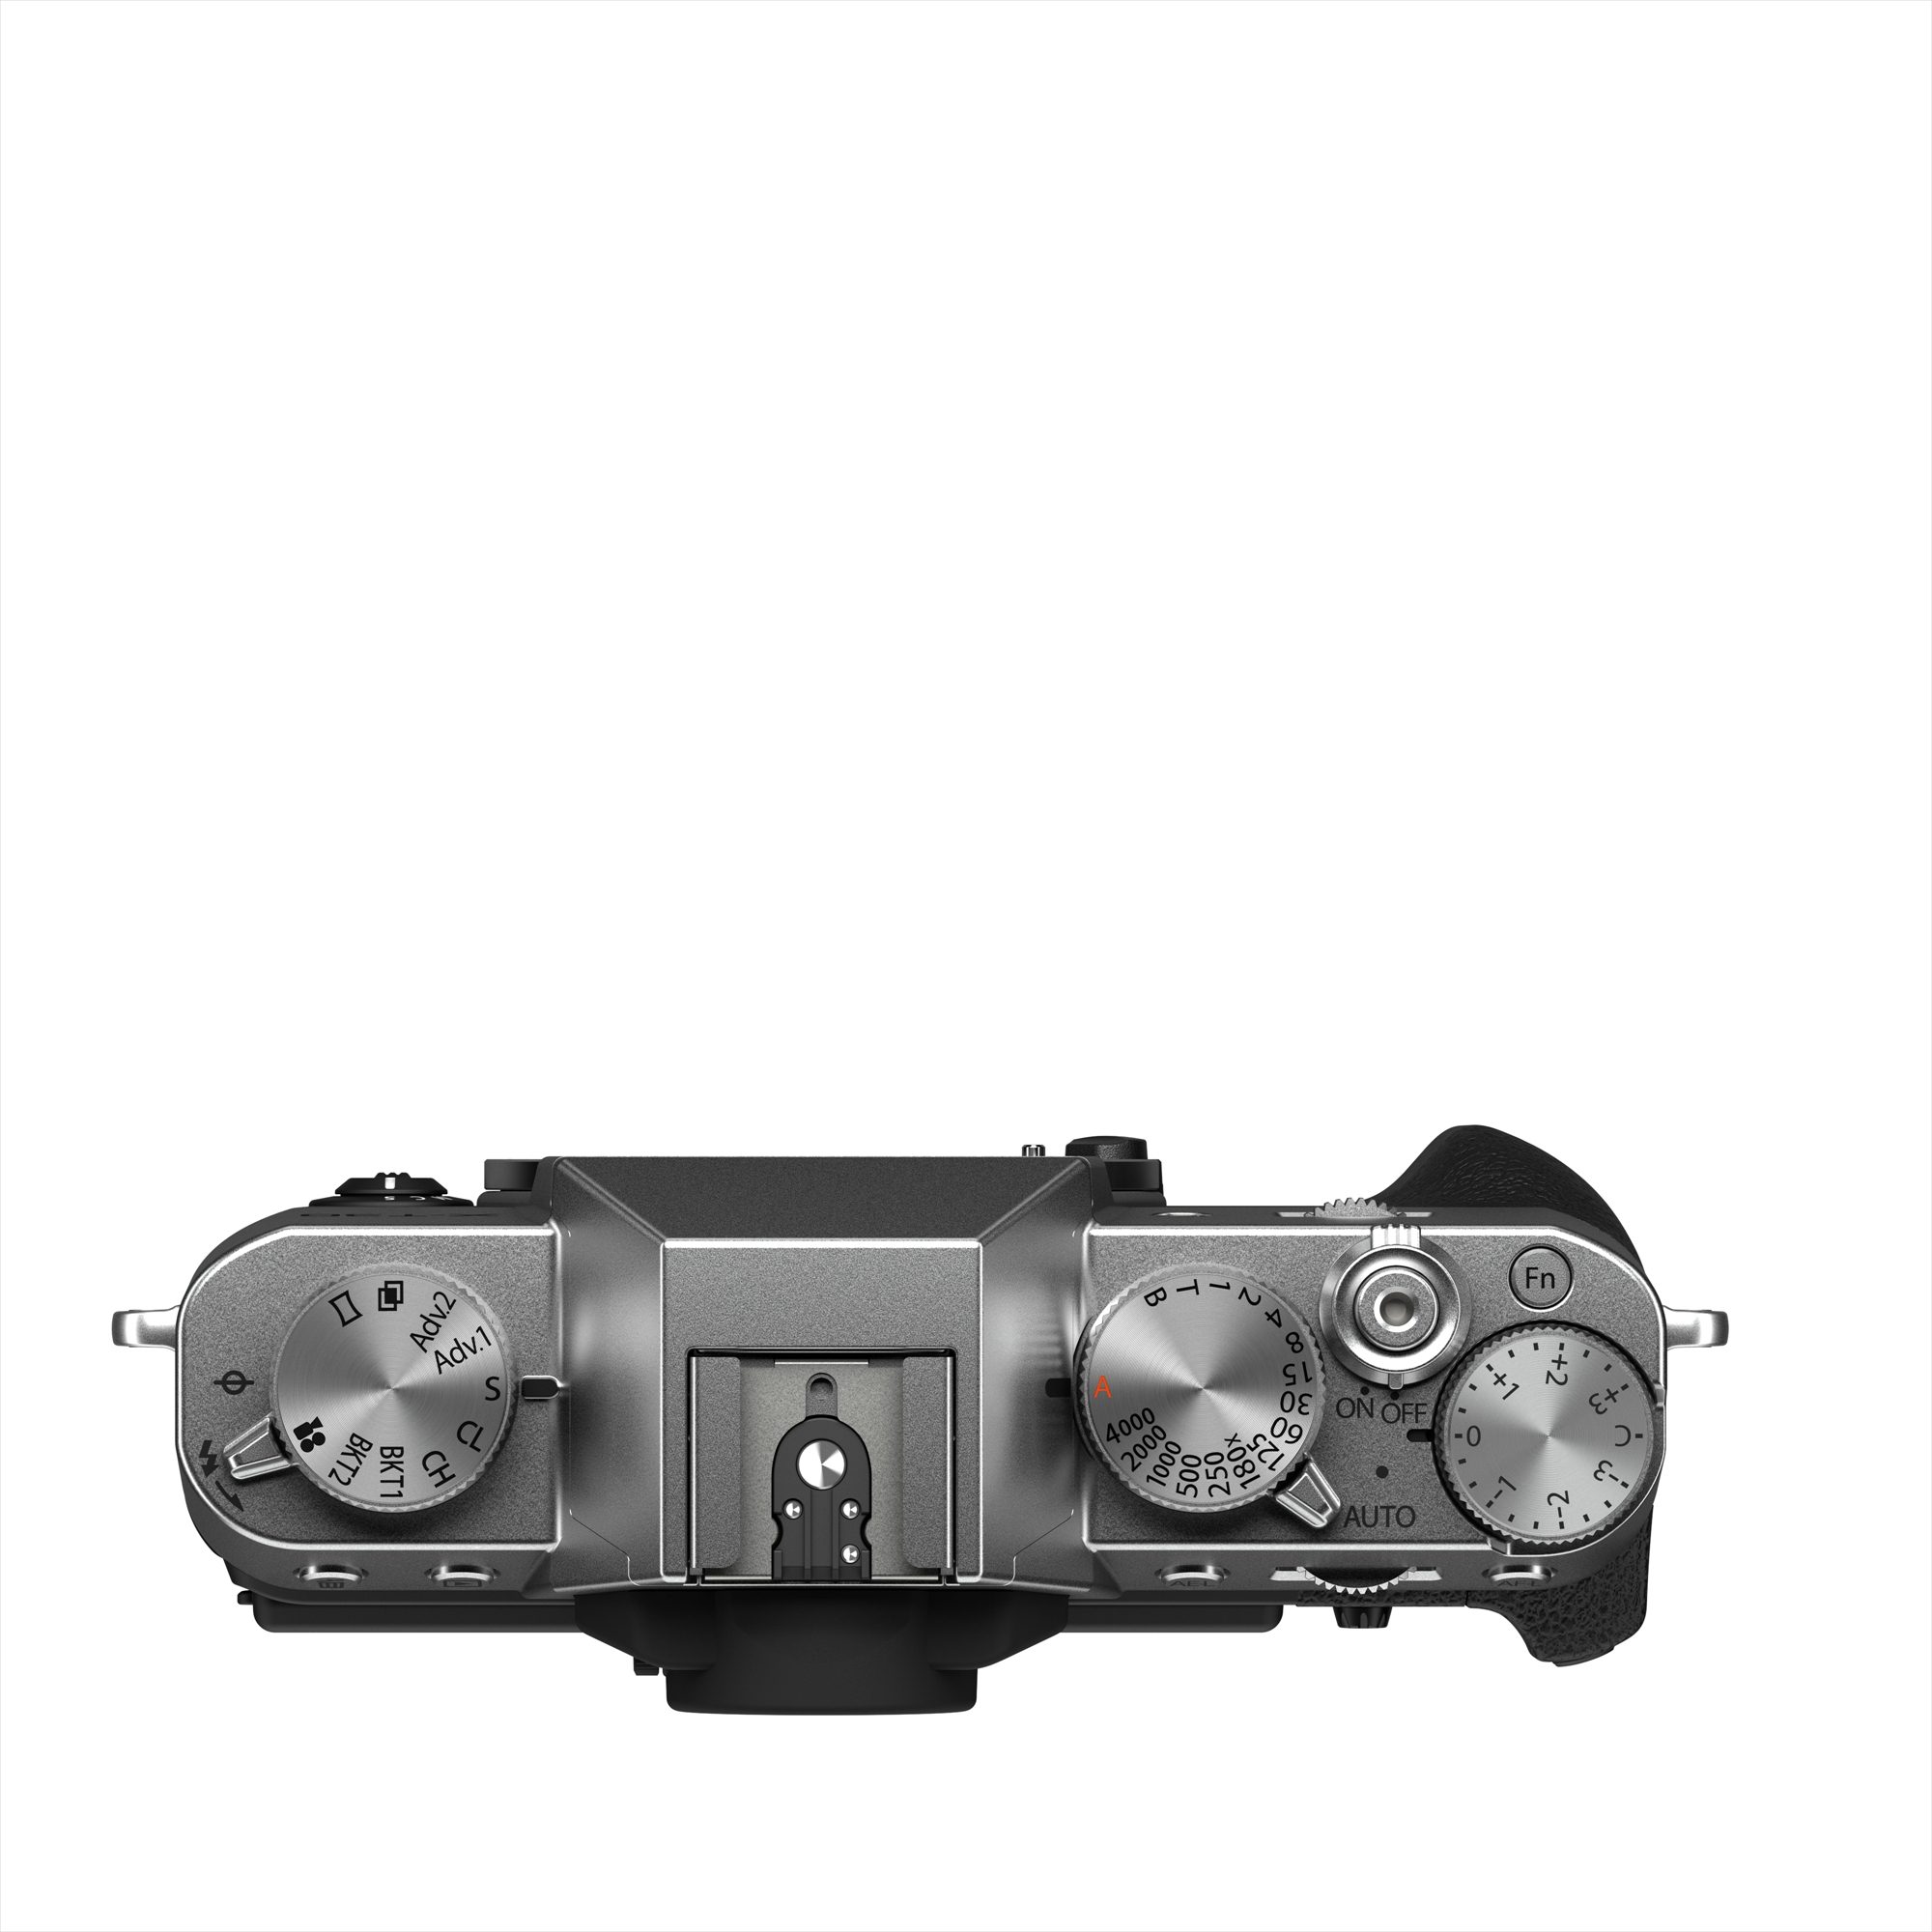 Fujifilm X-T30 II Body Only - Silver